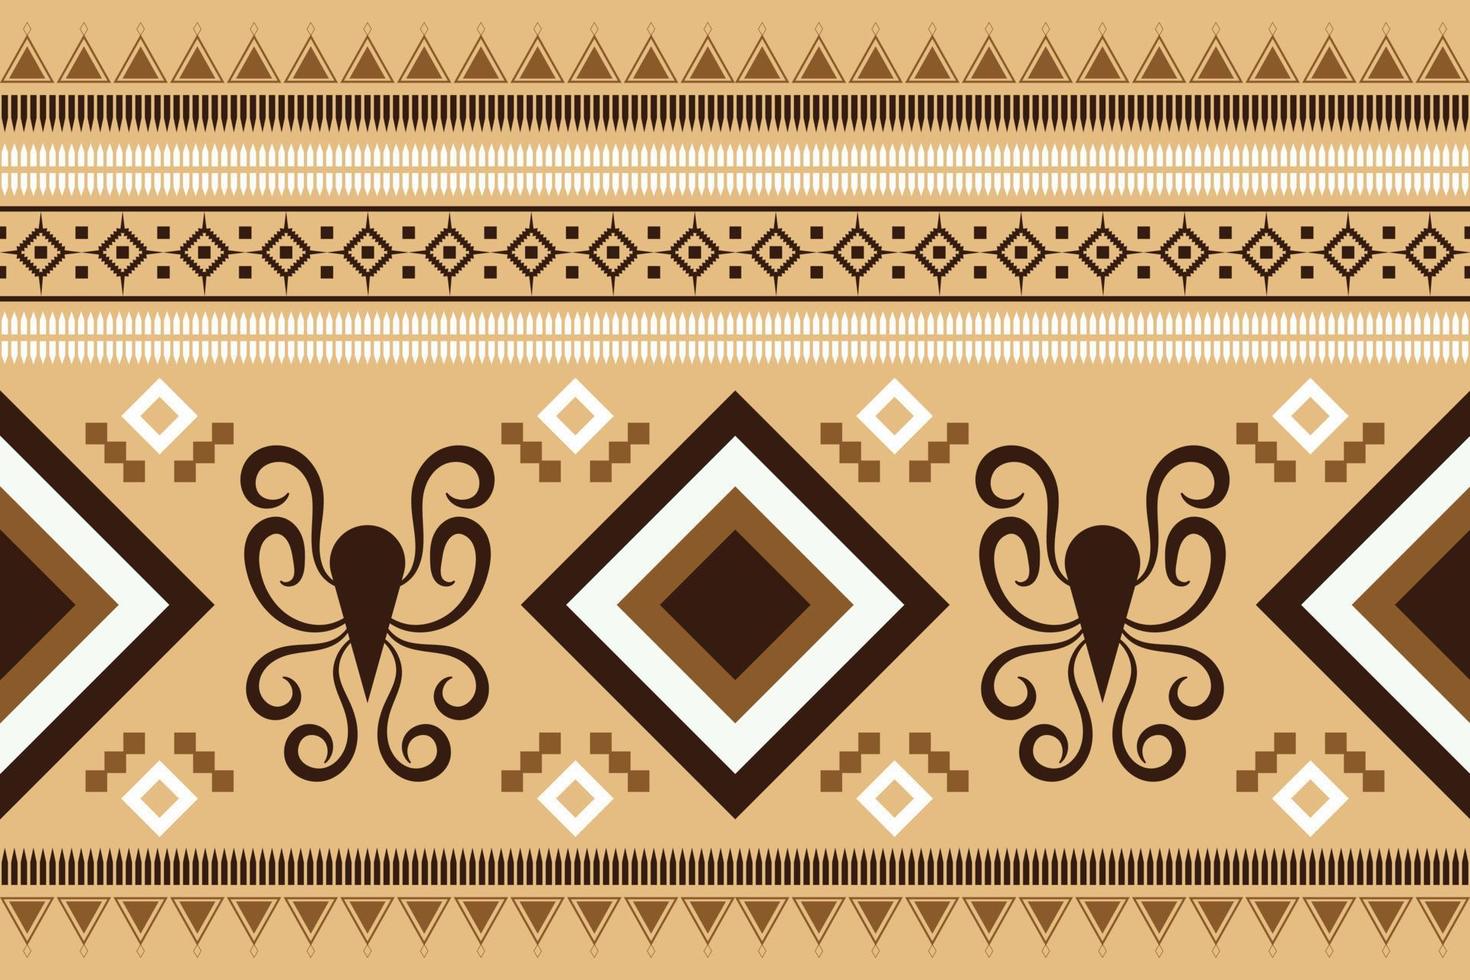 geometrischer stil des ethnischen stoffmusters. Sarong aztekisches ethnisches orientalisches Muster traditioneller orangefarbener Hintergrund. abstrakt, vektor, illustration. Verwendung für Textur, Kleidung, Verpackung, Dekoration, Teppich. vektor